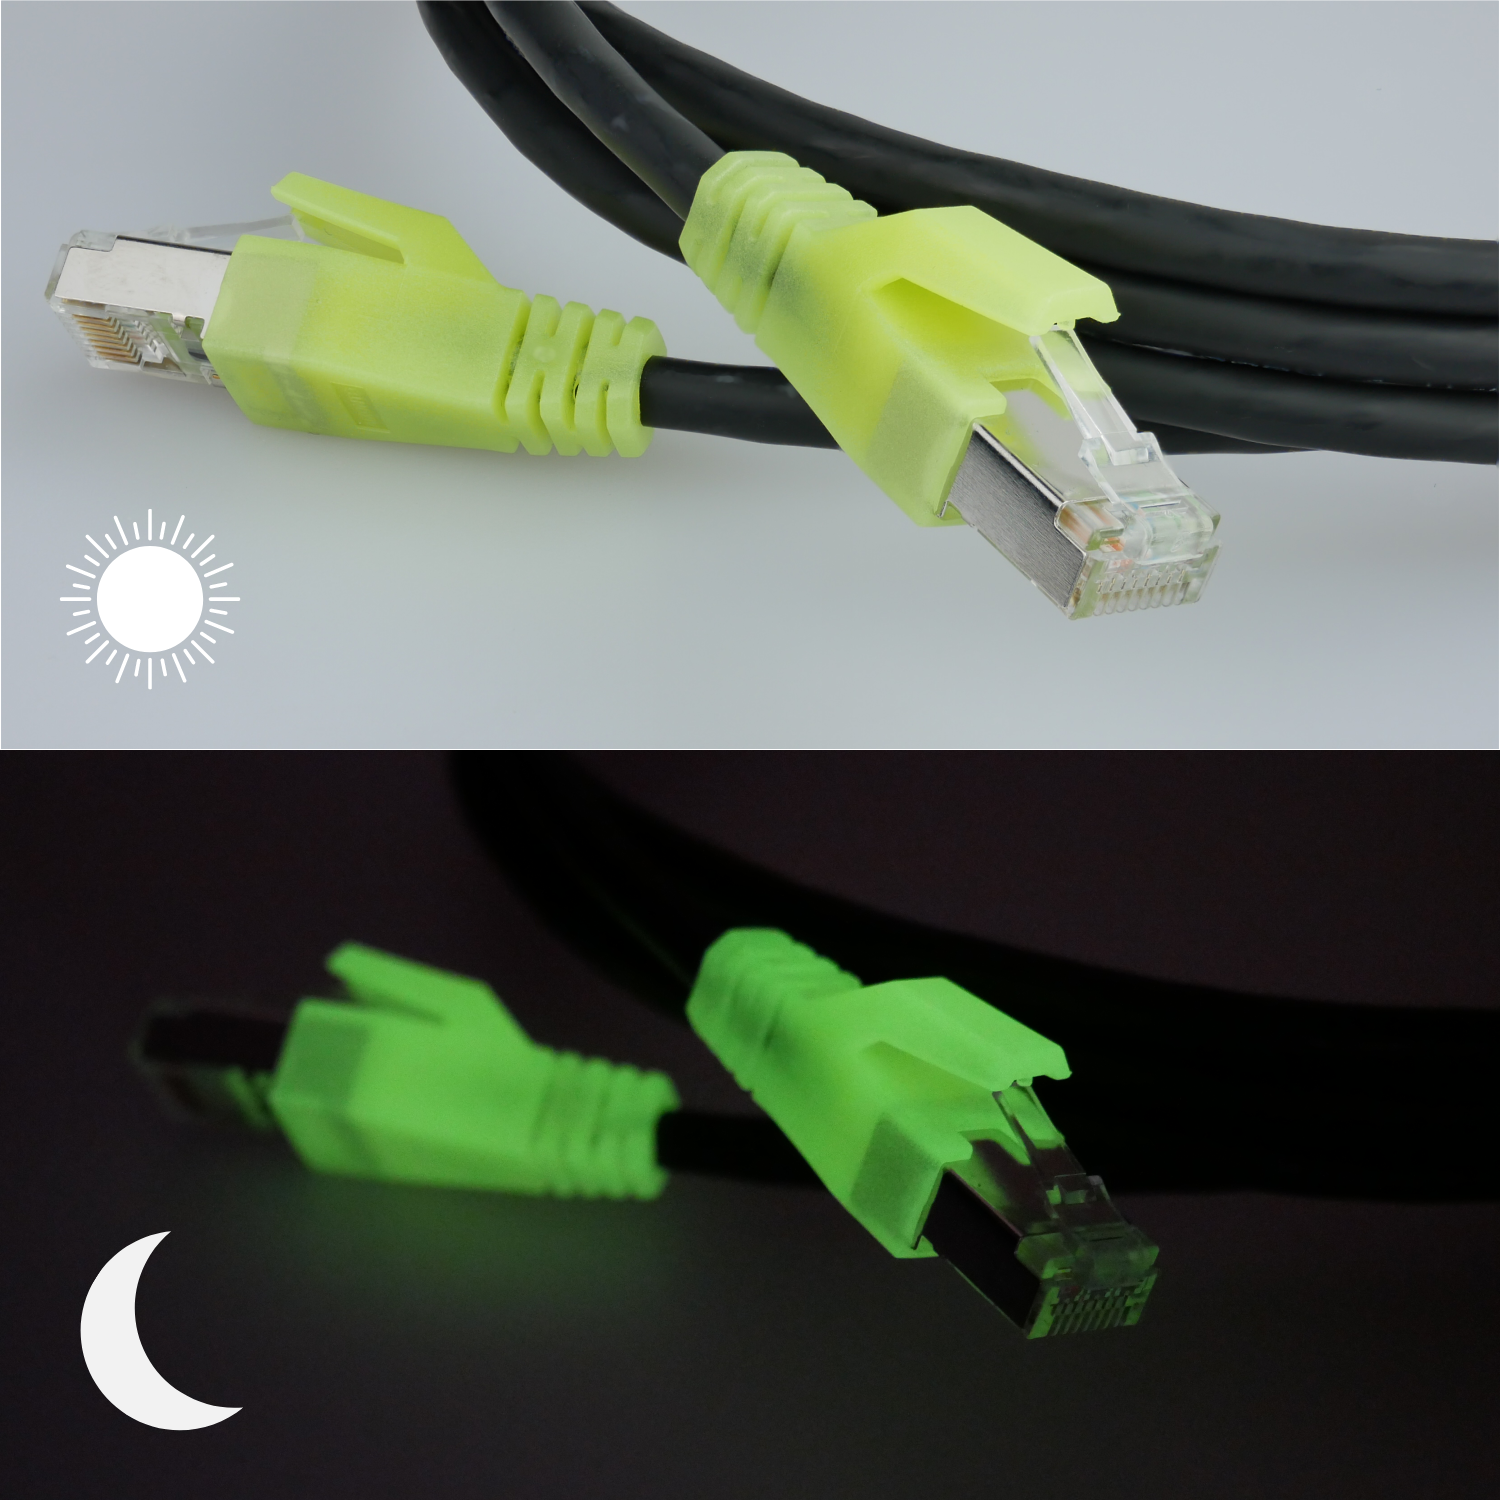 AIXONTEC 20,0m LAN Kabel 20,0 Gigabit RJ45 m Netzwerkkabel, Ethernet, Patchkabel